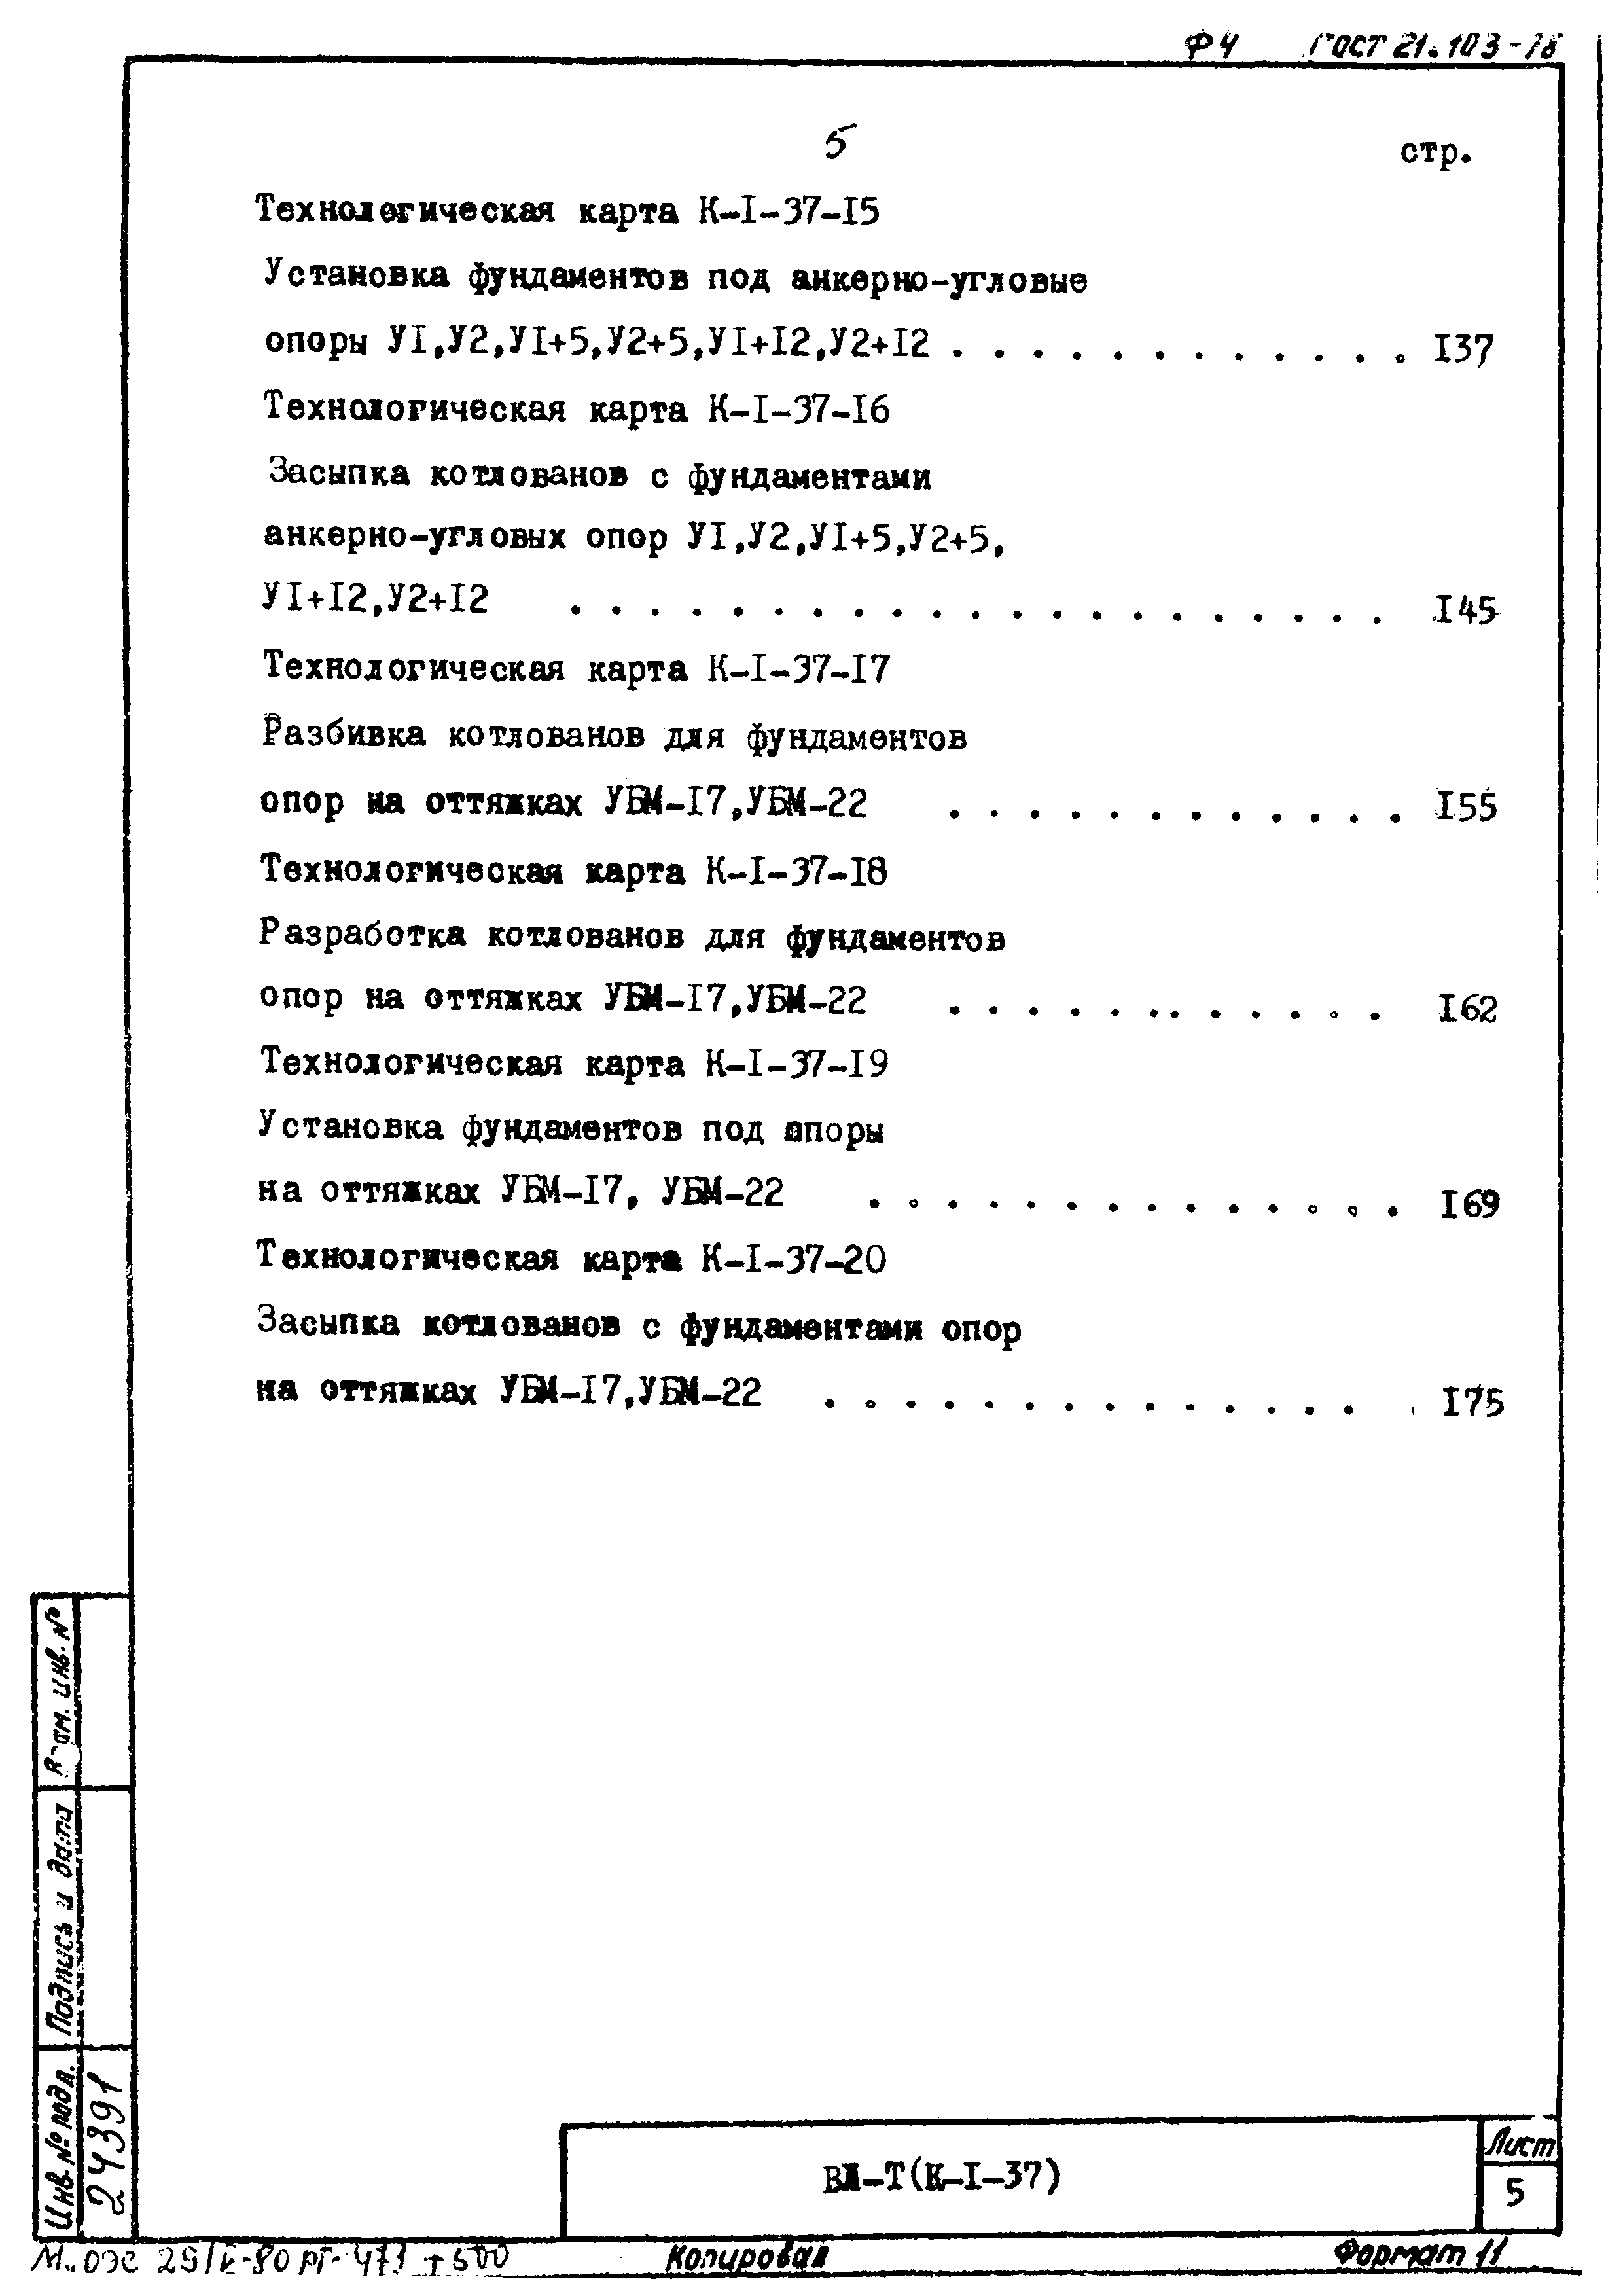 ТК К-I-37-19